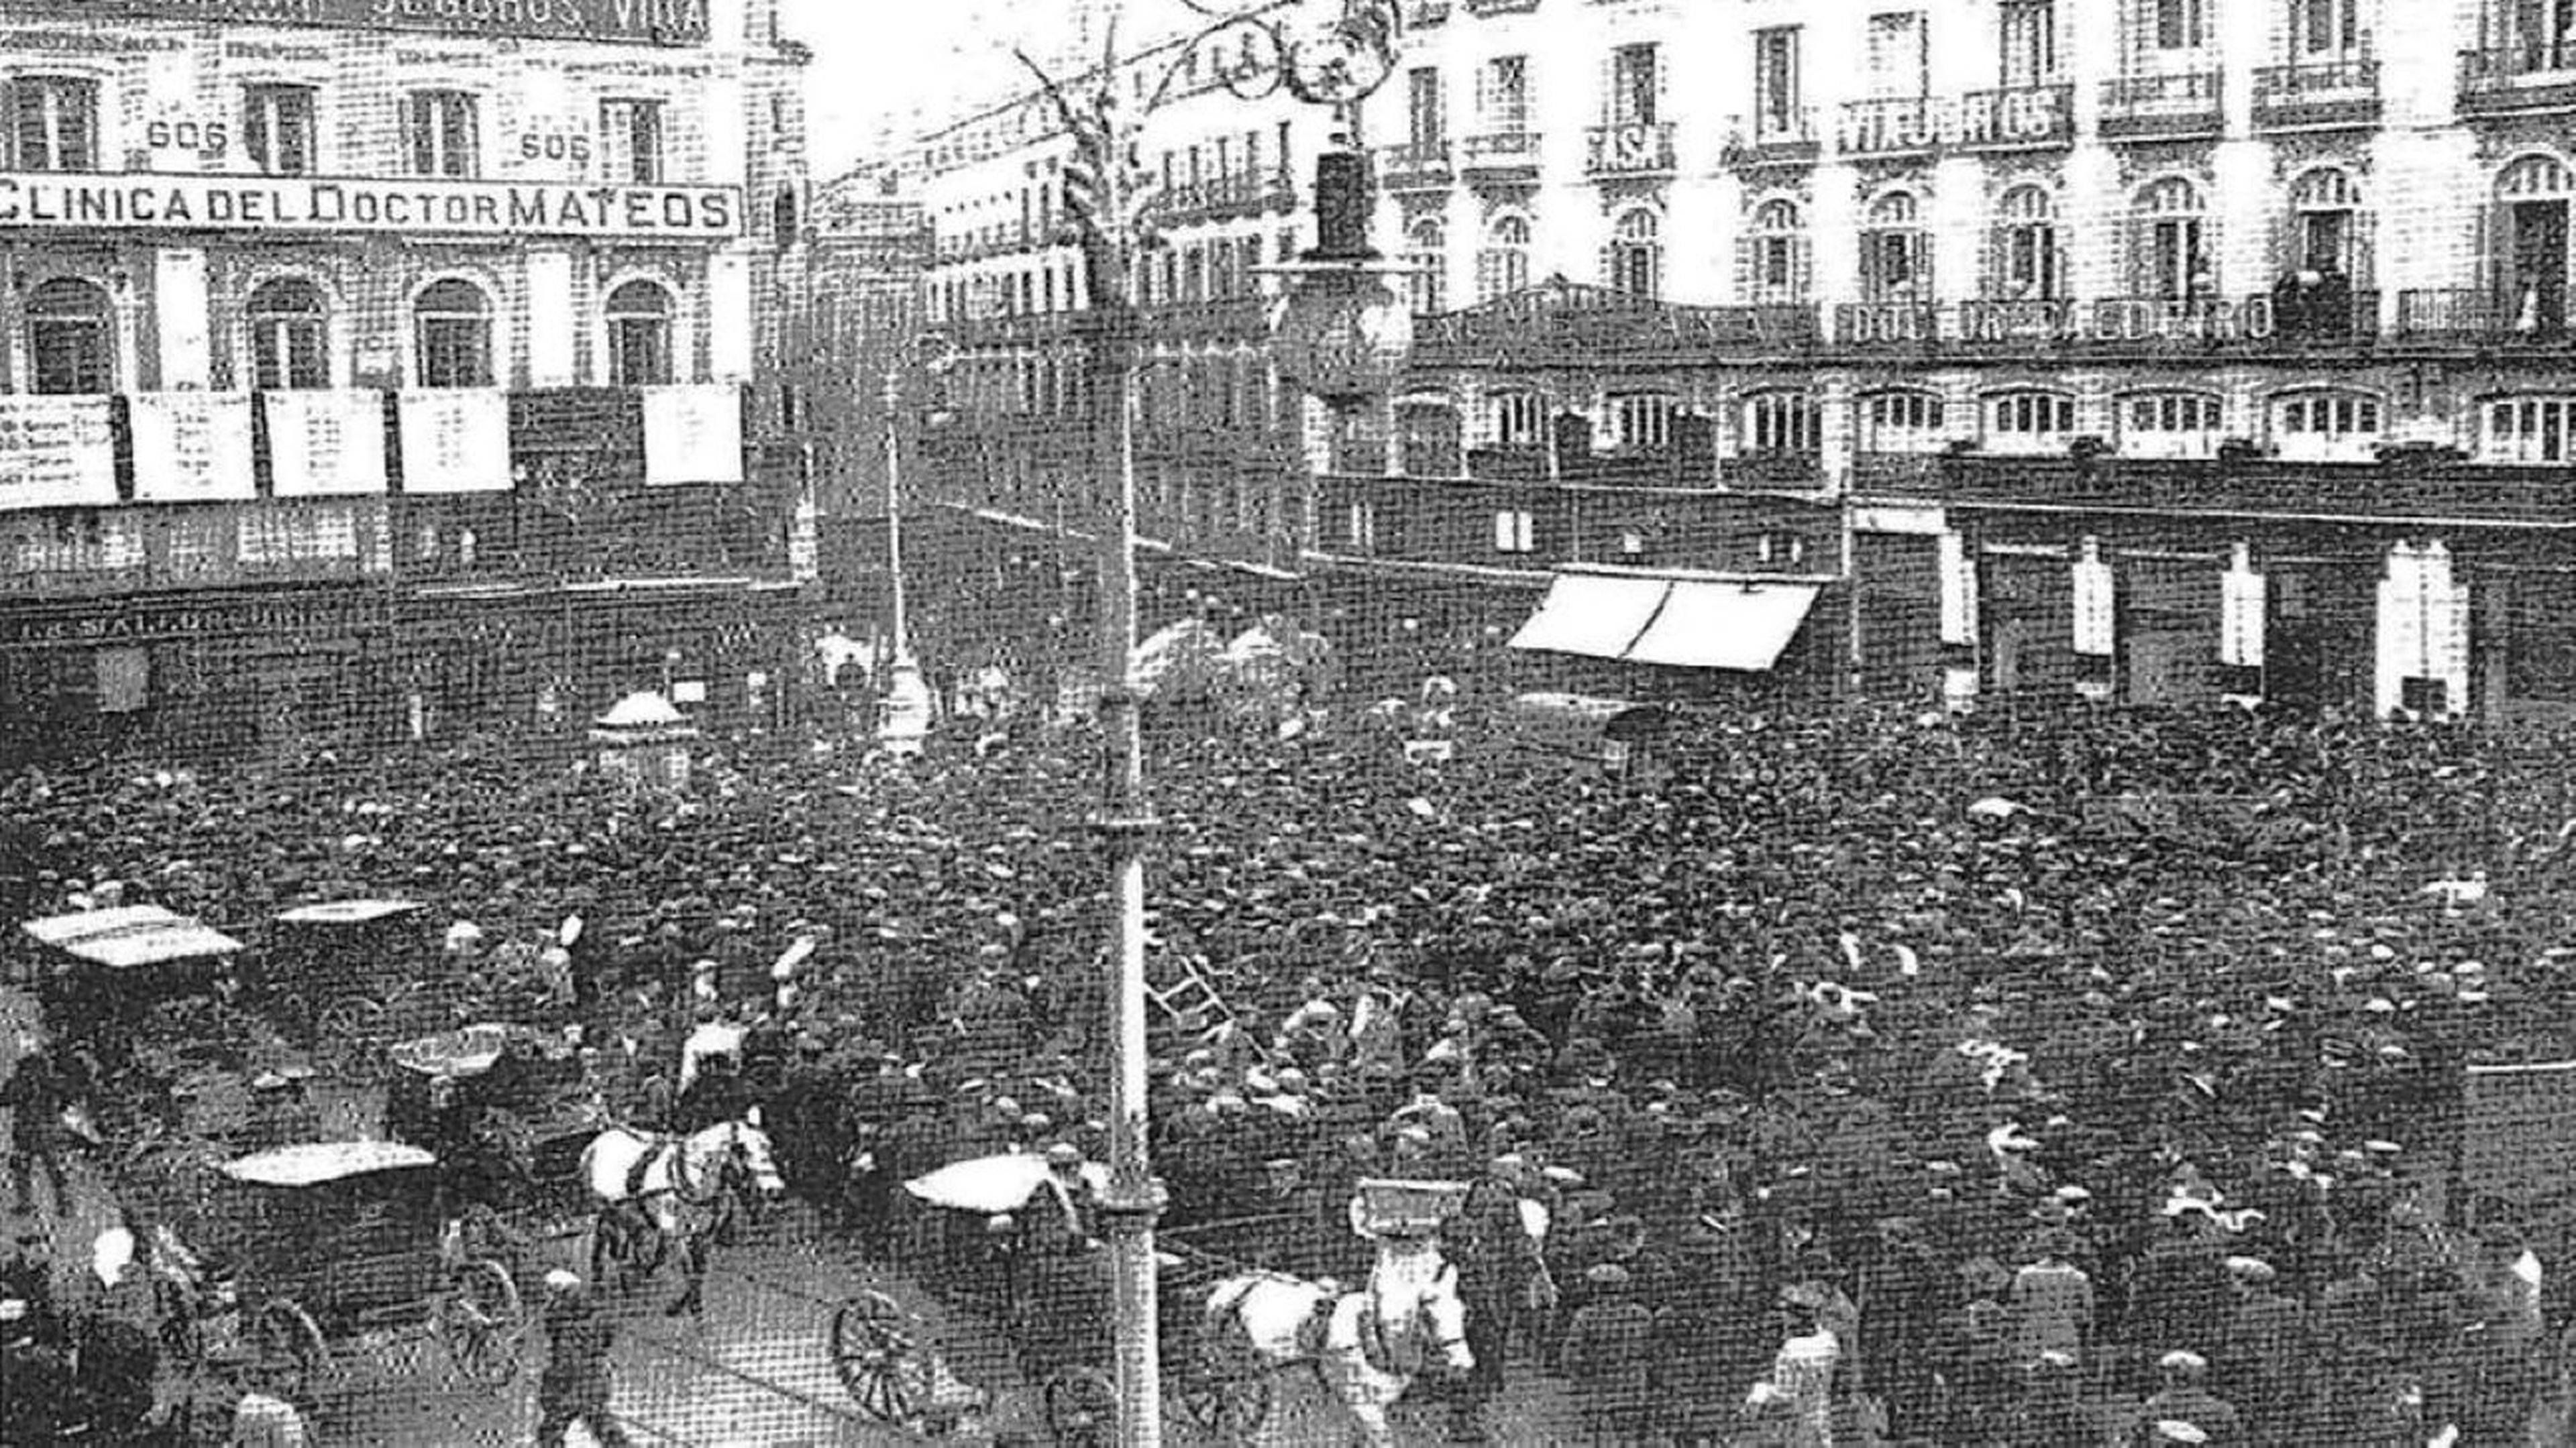 "El sorteo de la Lotería de Navidad", Puerta del Sol, Madrid